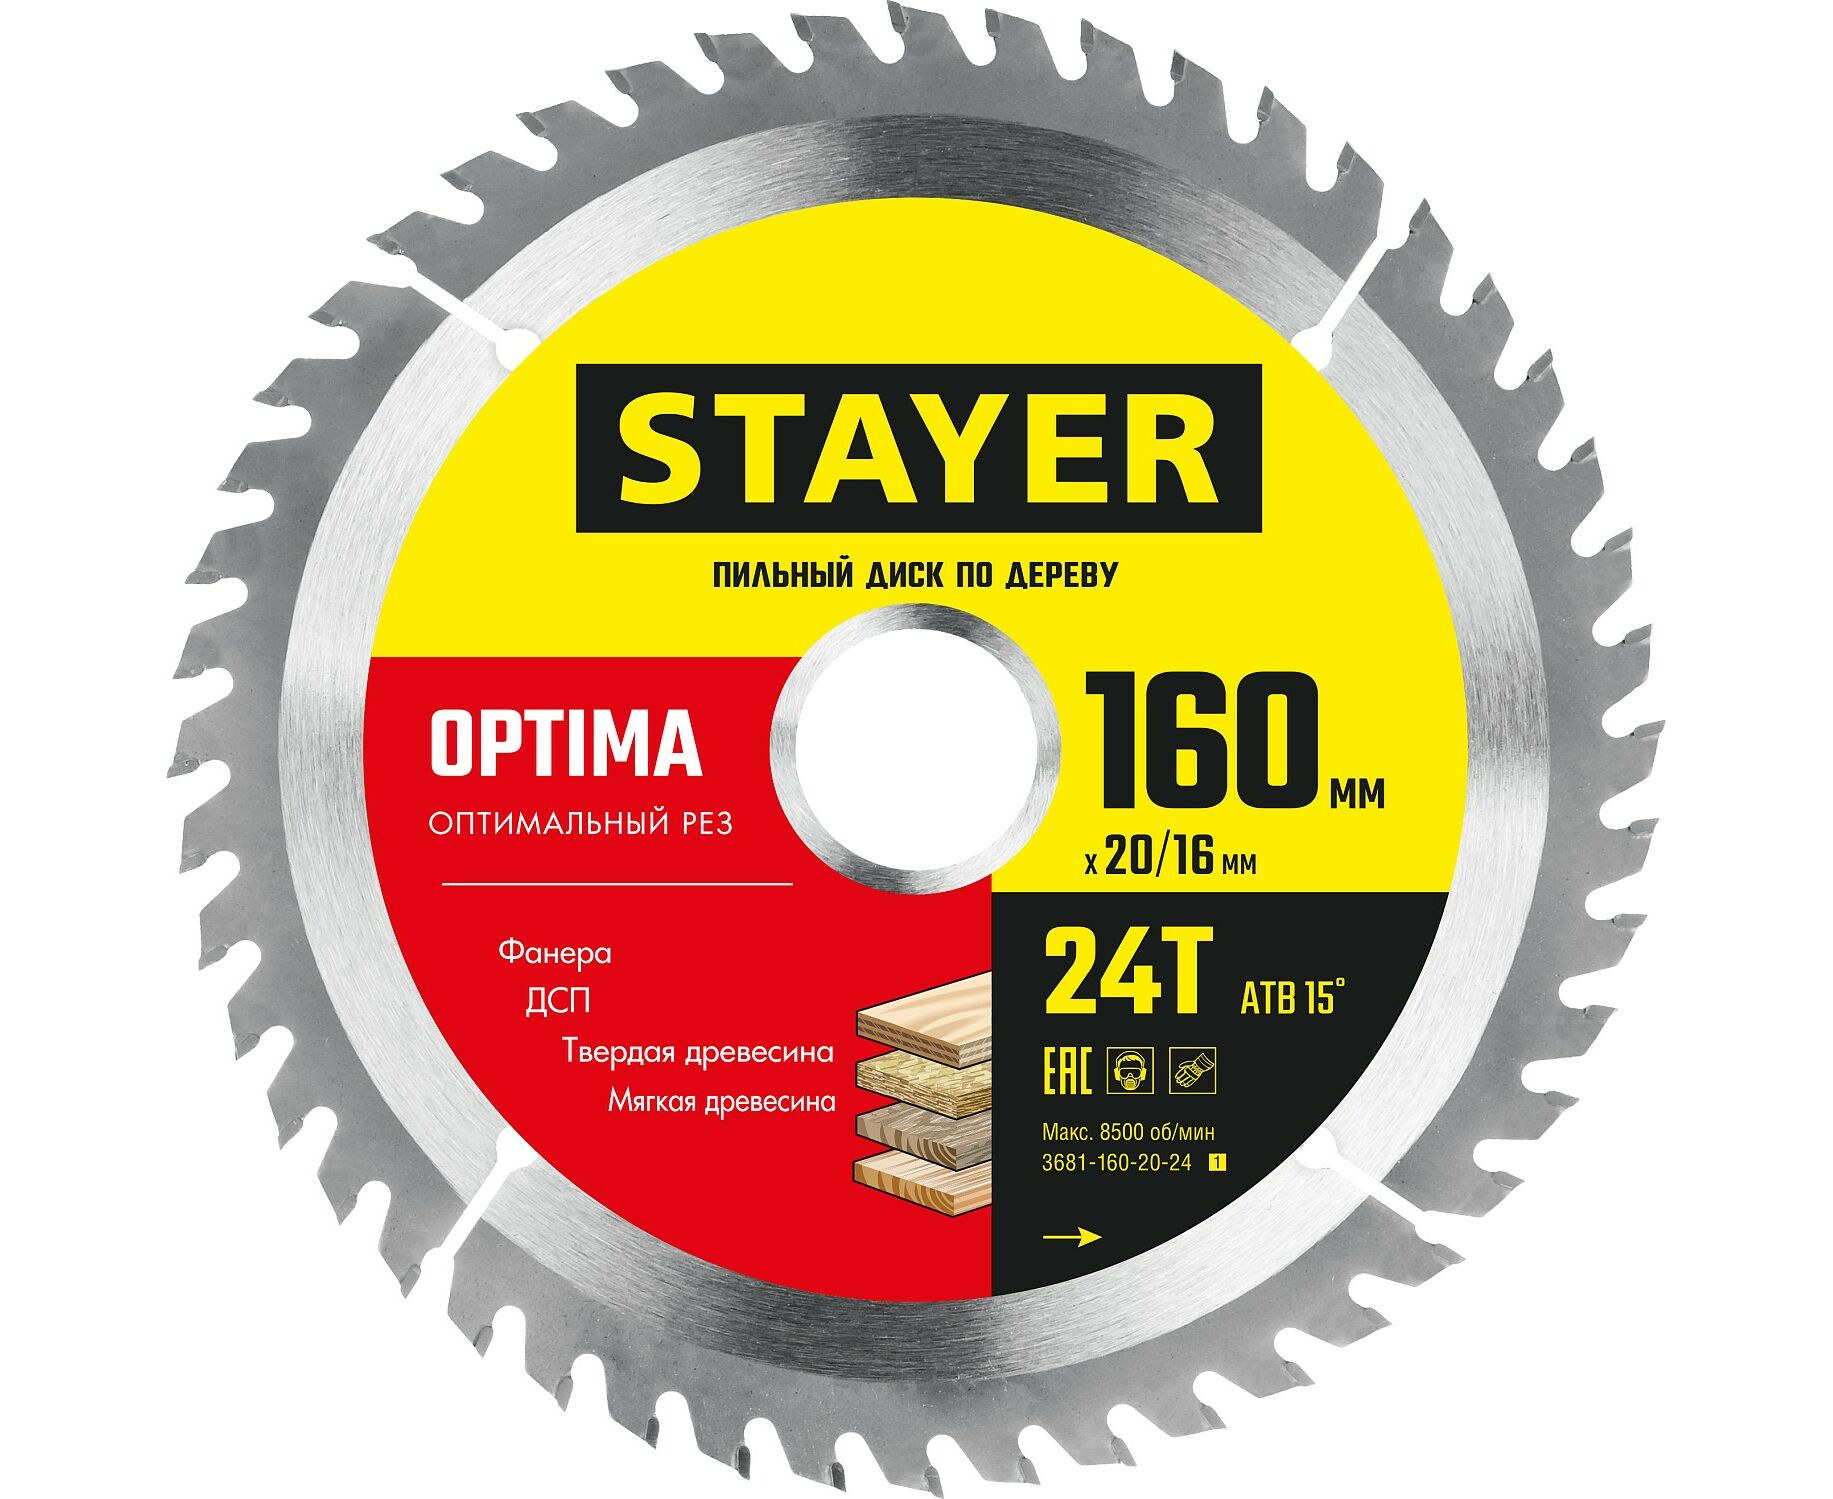 Пильный диск STAYER OPTIMA 160 x 20/16мм 24T, оптимальный рез по дереву